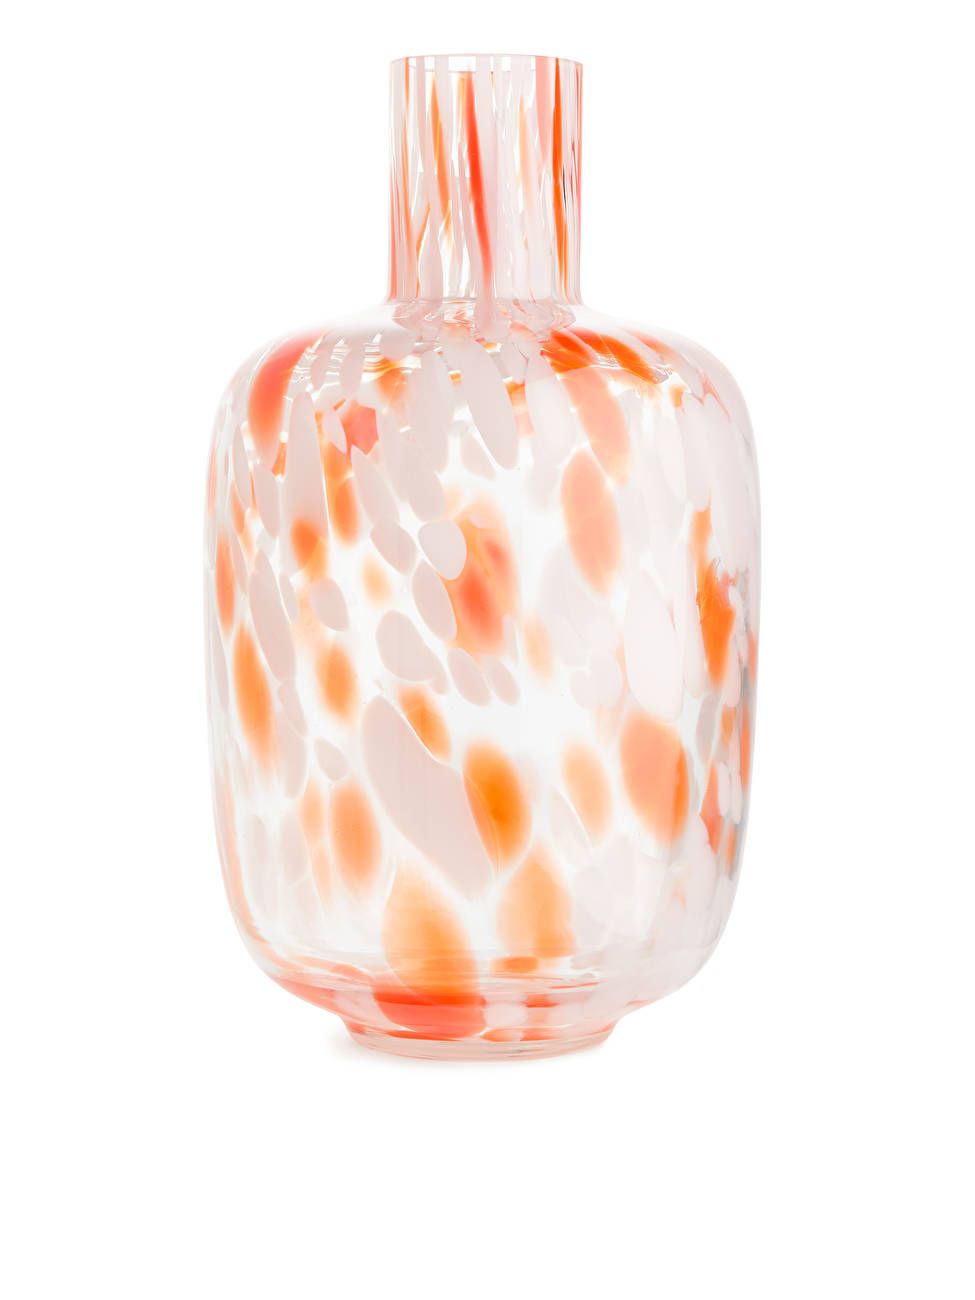 Confetti Vase 29 cm - Clear Glass/Multi Colour - ARKET PT | ARKET (US&UK)